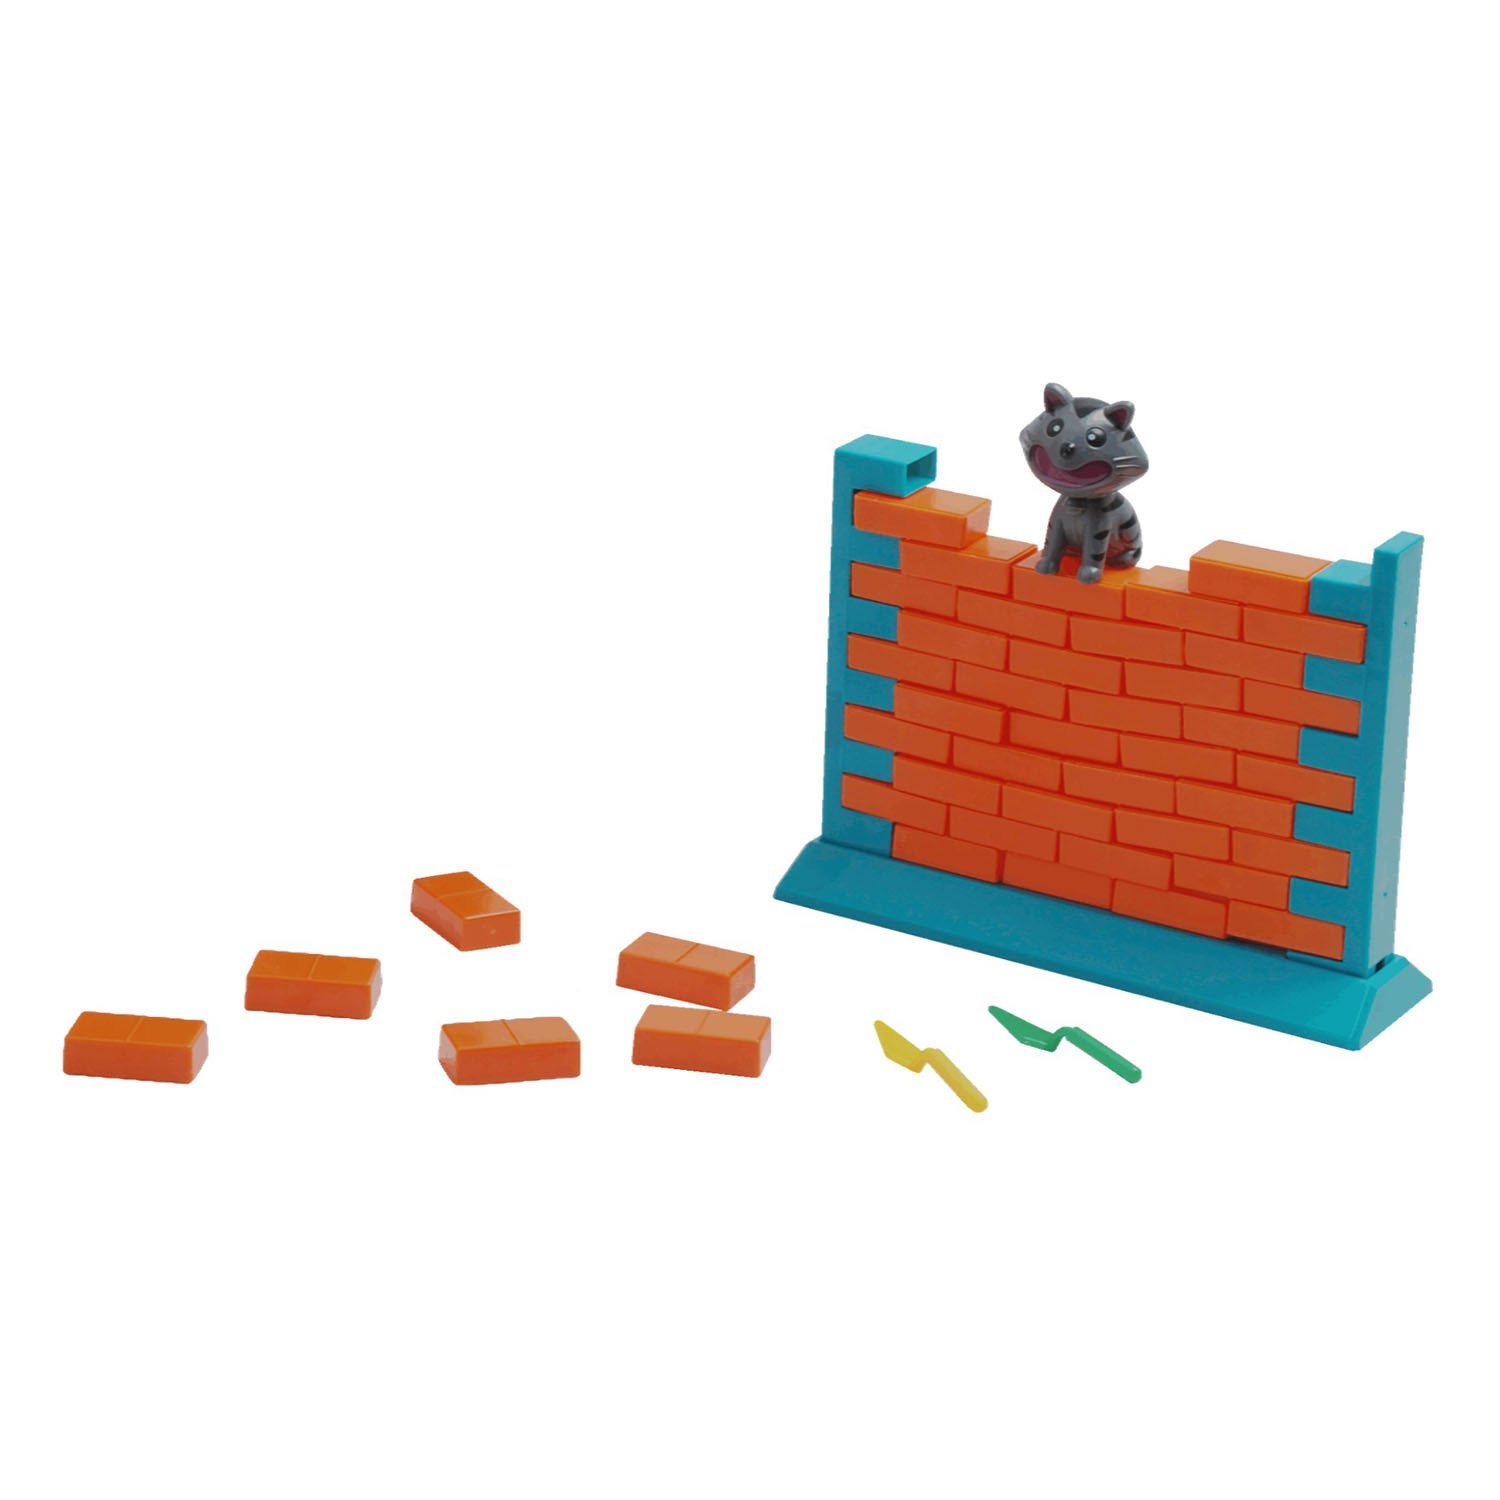 Настольная игра "Кошка на стене". Фото N4